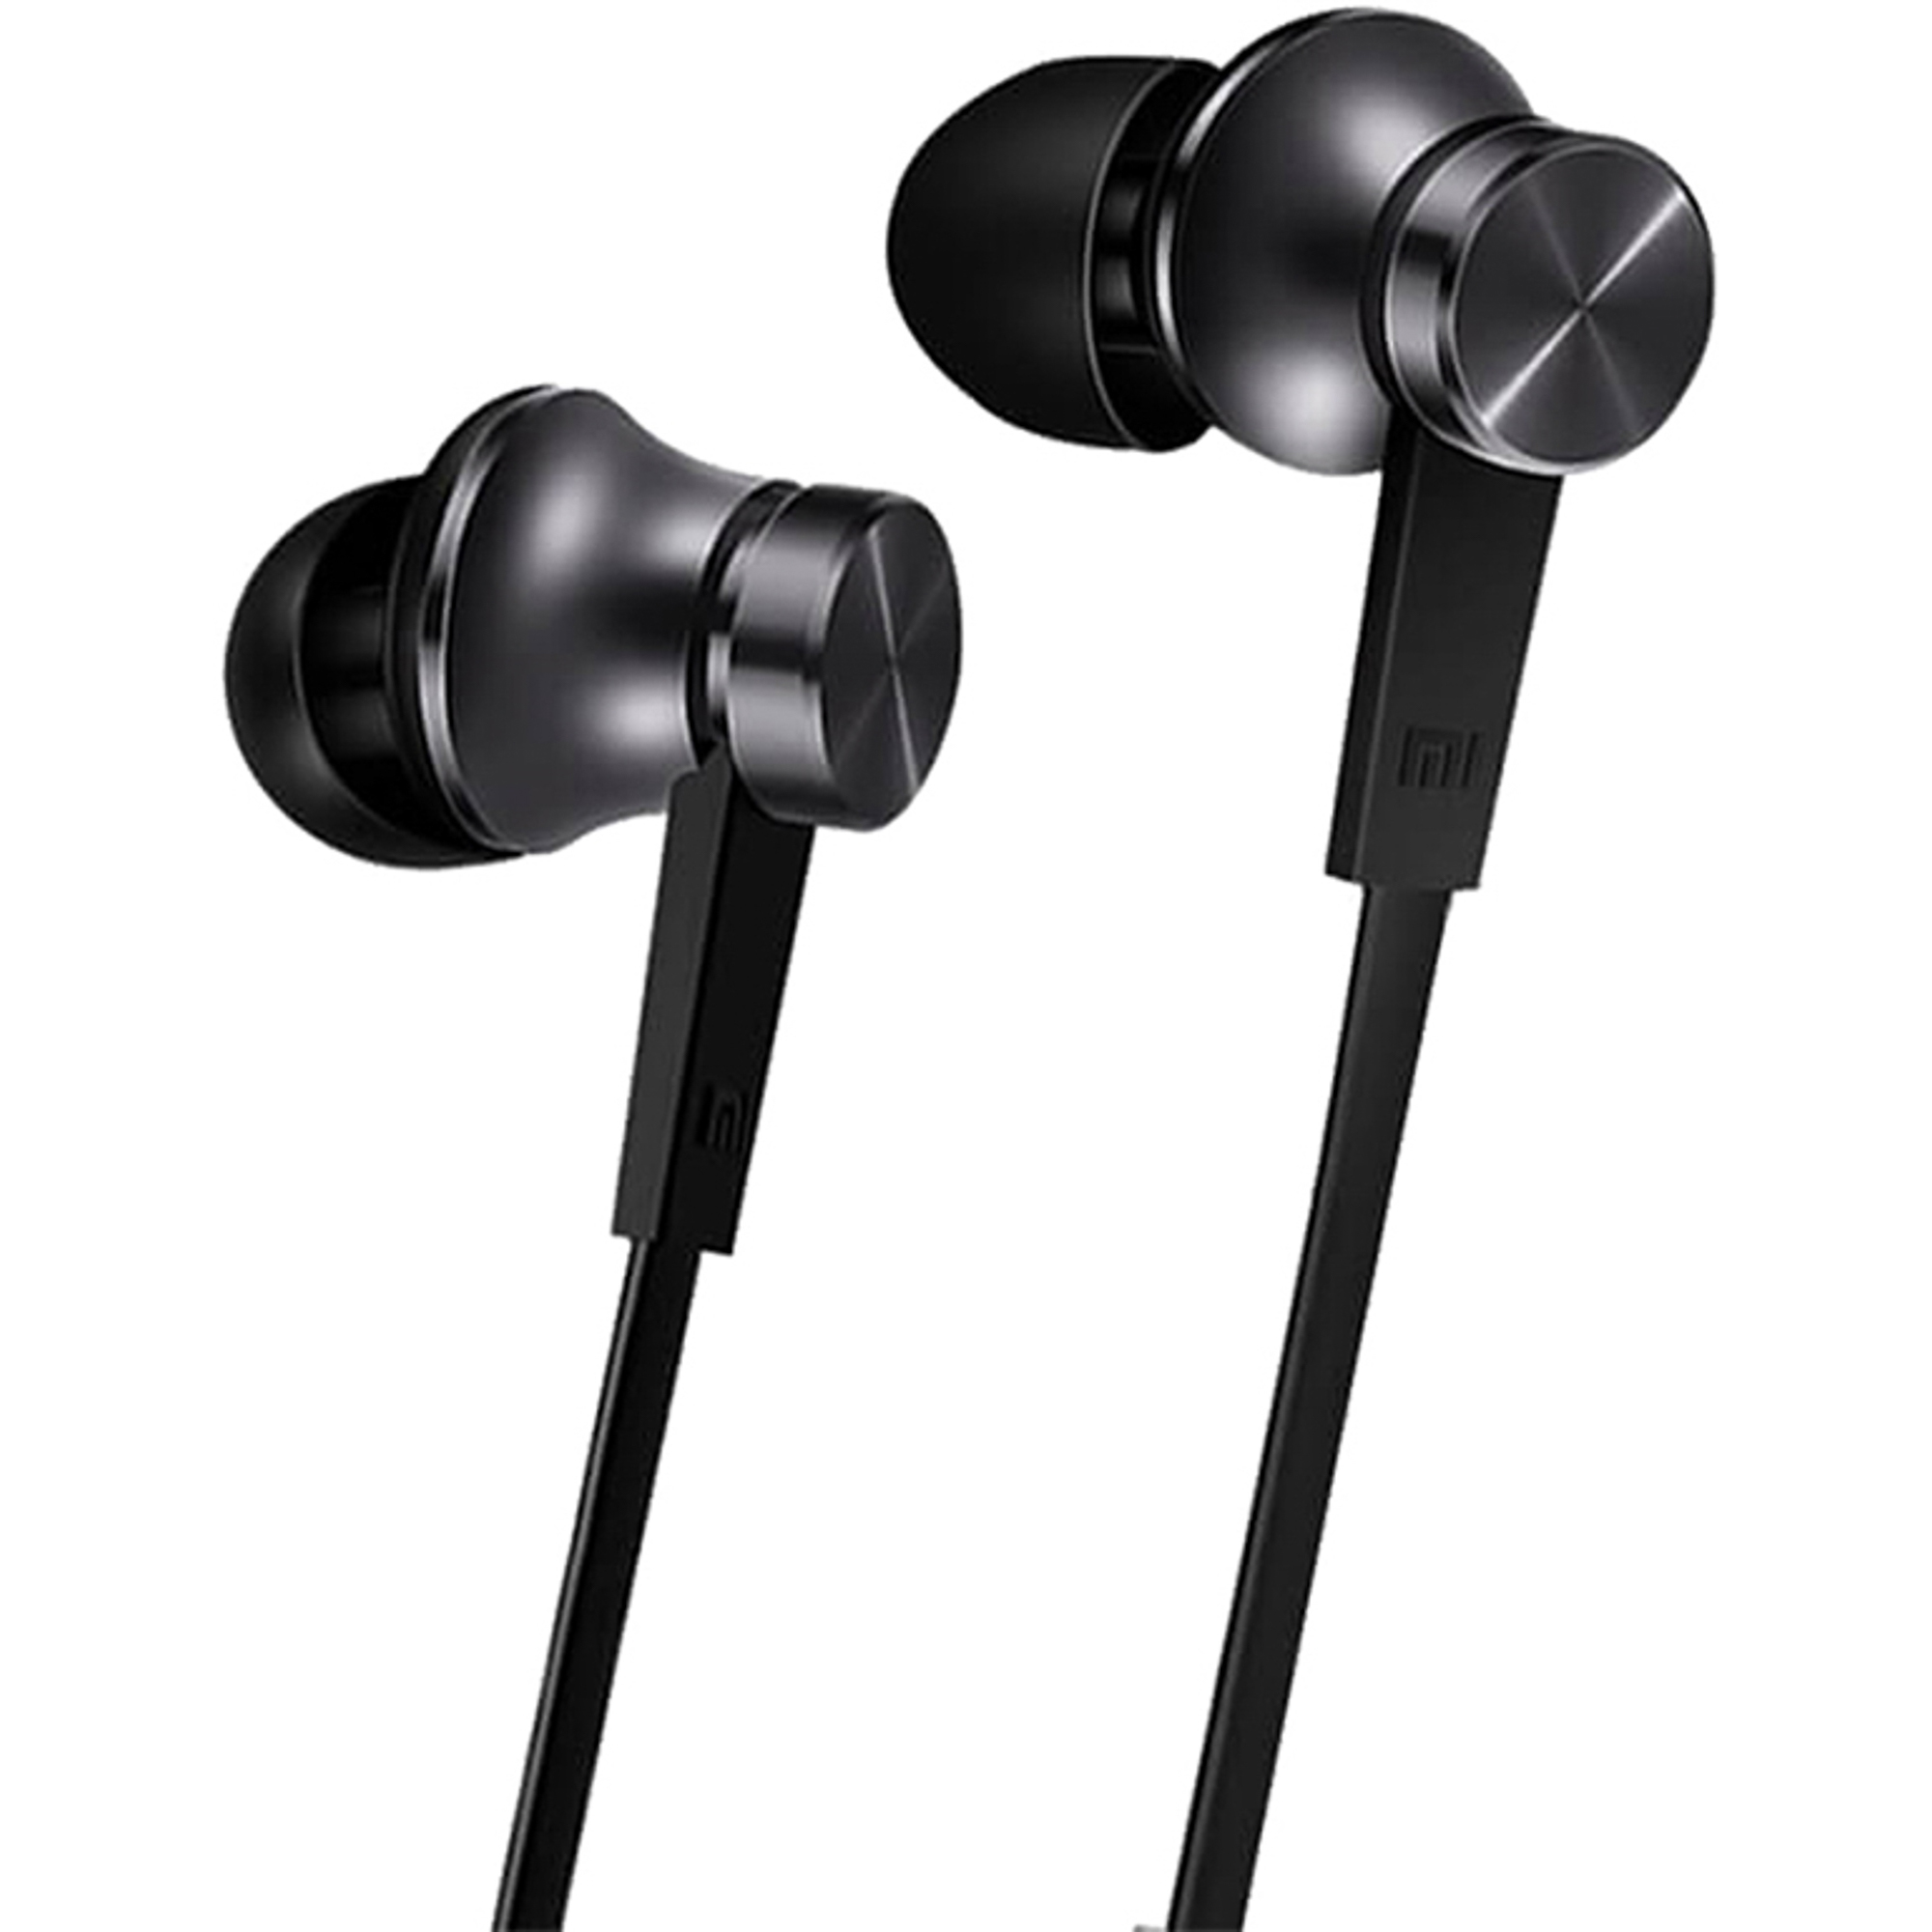 наушники mi наушники in ear headphones basic silver hsej03jy zbw4355ty Наушники Xiaomi Mi In-Ear Headphones Basic Black